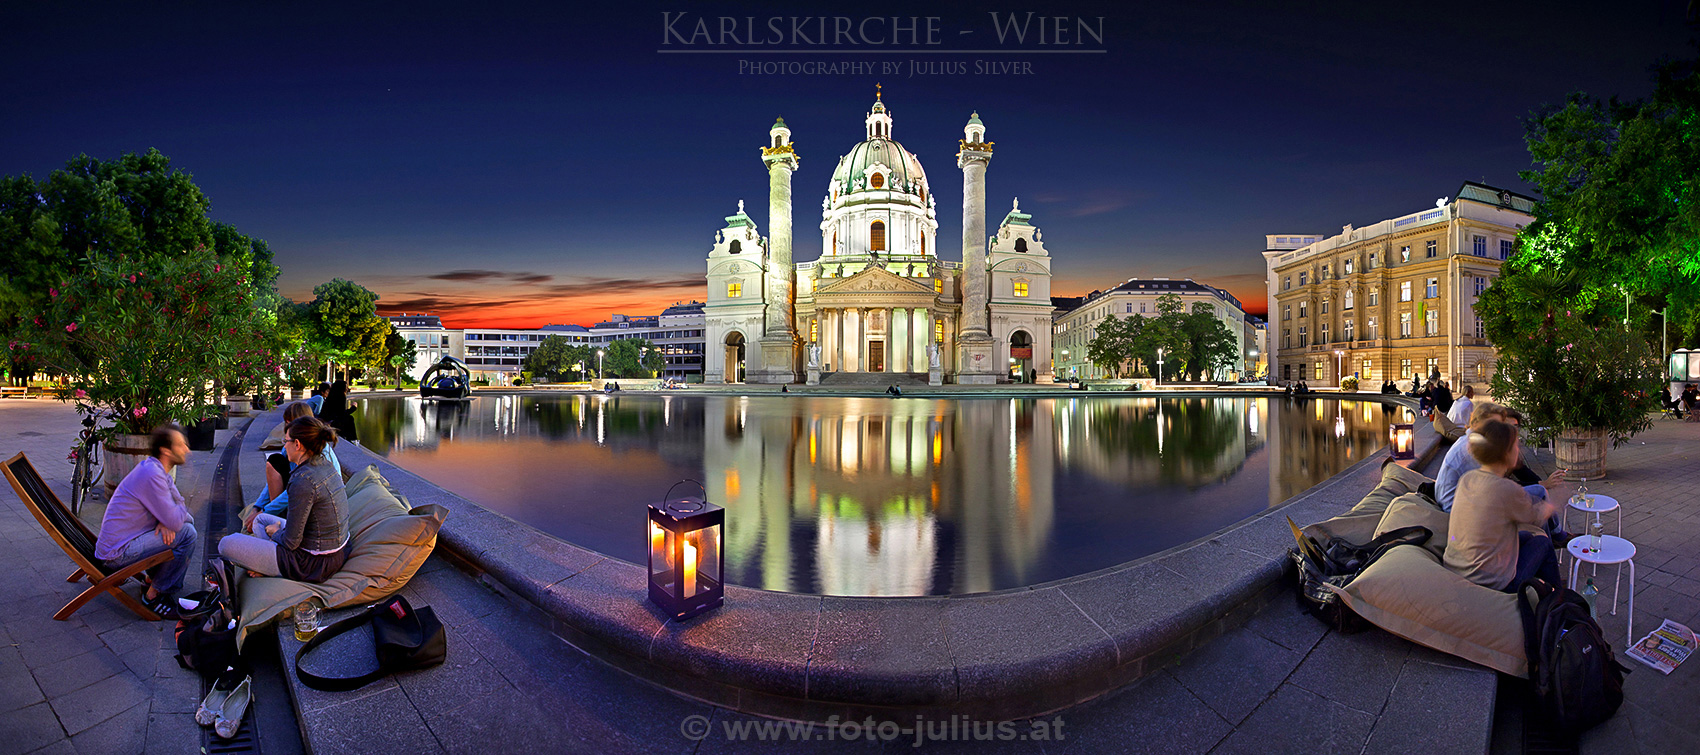 W5769a_Wien_Karlskirche.jpg, 632kB